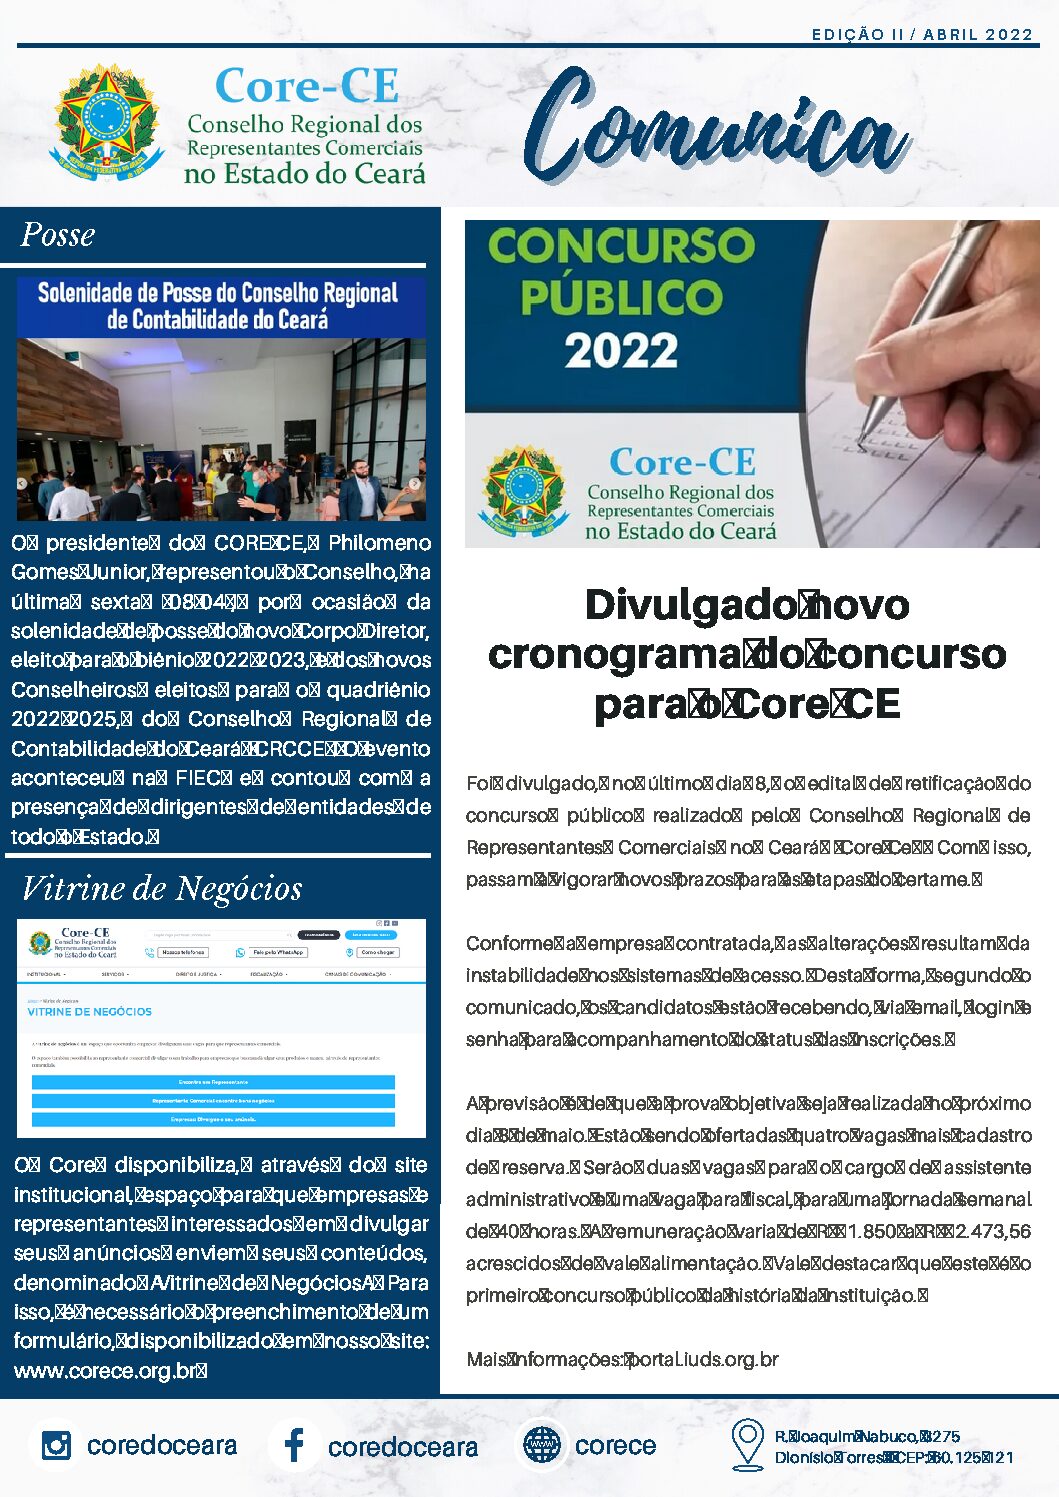 Core-CE Comunica, edição II